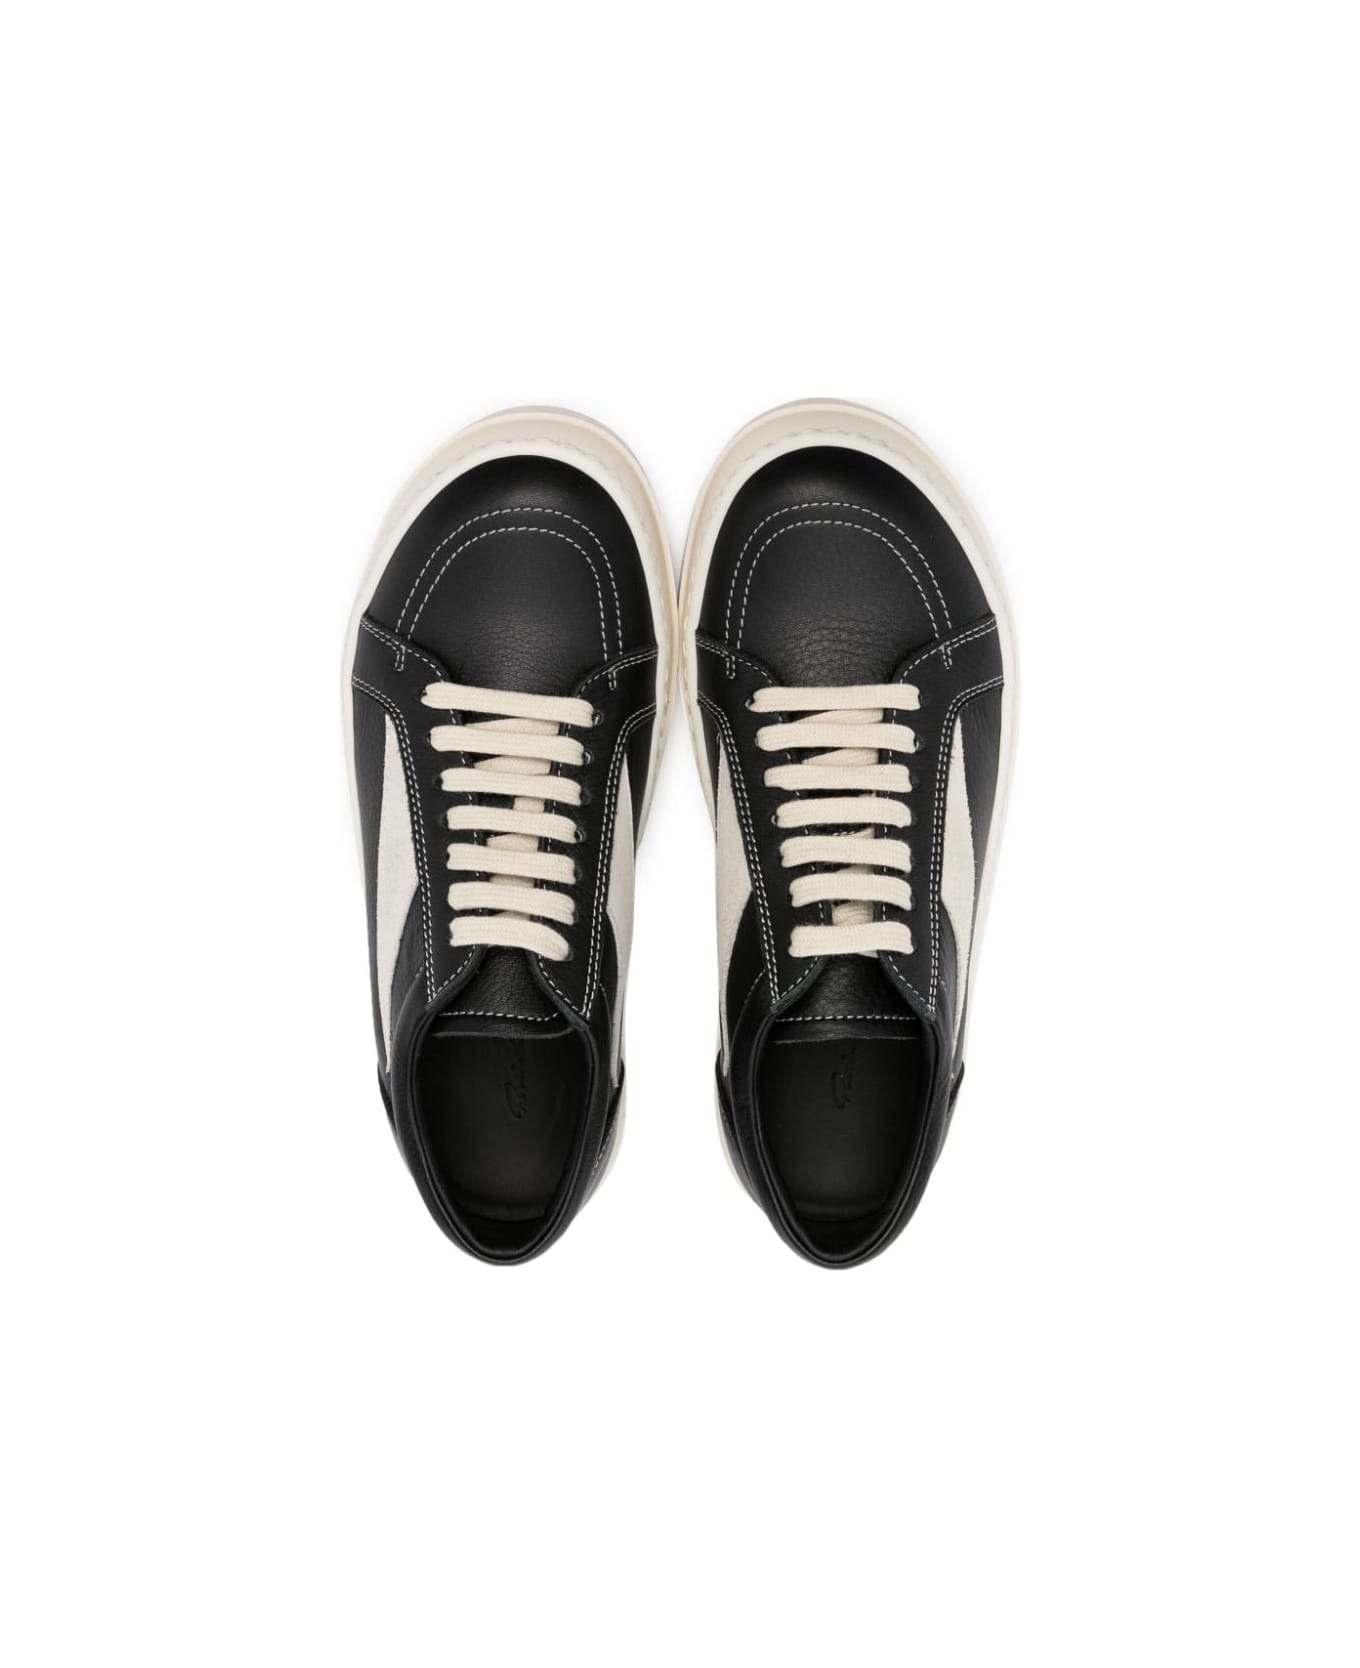 Rick Owens Leather Vintage Sneakers - Black Pearl Milk シューズ